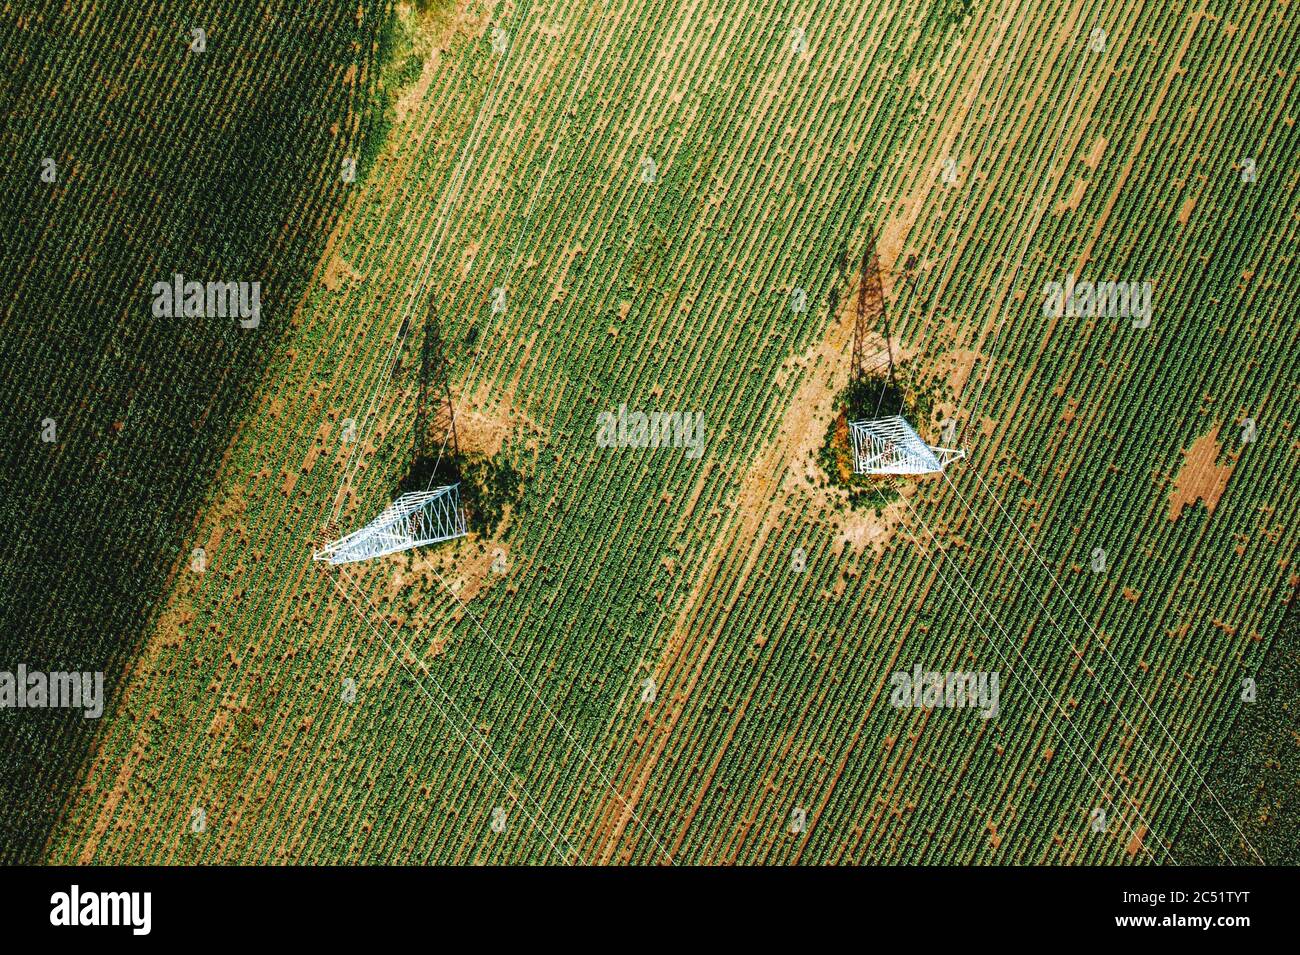 Vista aerea dei piloni elettrici nel campo agricolo che colano l'ombra sui raccolti, vista dall'alto, fotografia di droni Foto Stock